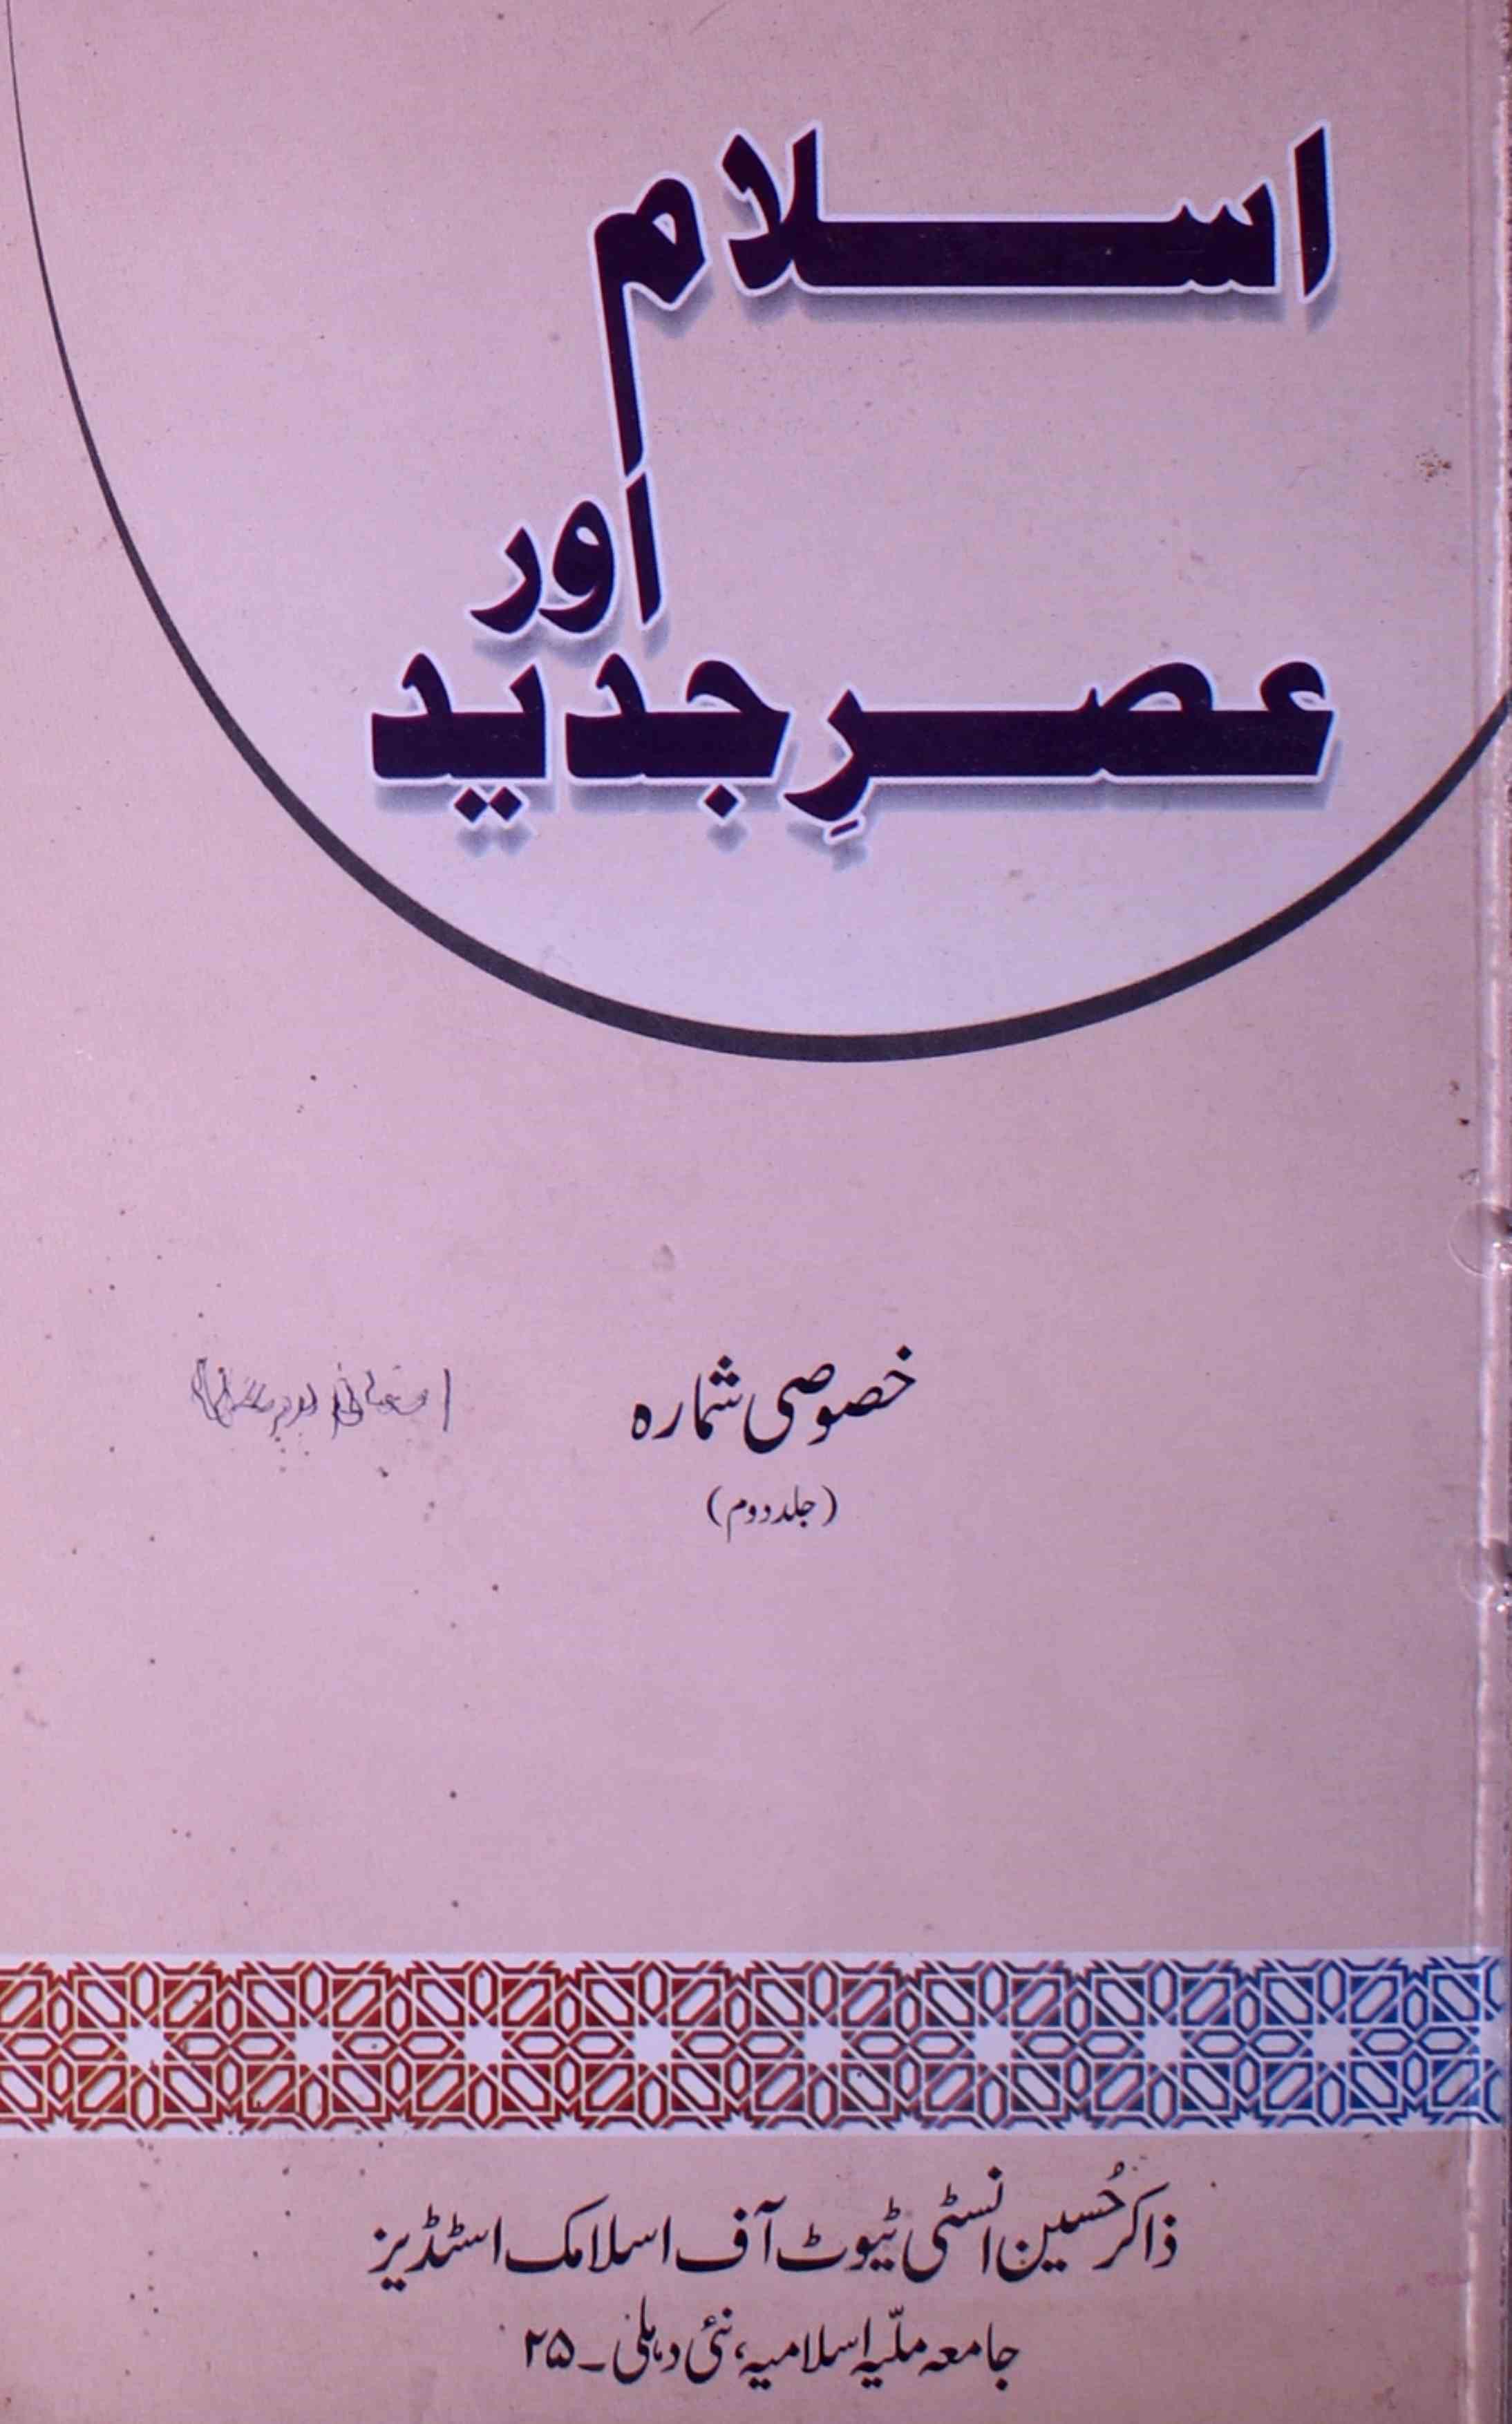 اسلام اور عصر جدید-شمارہ نمبر-003,004